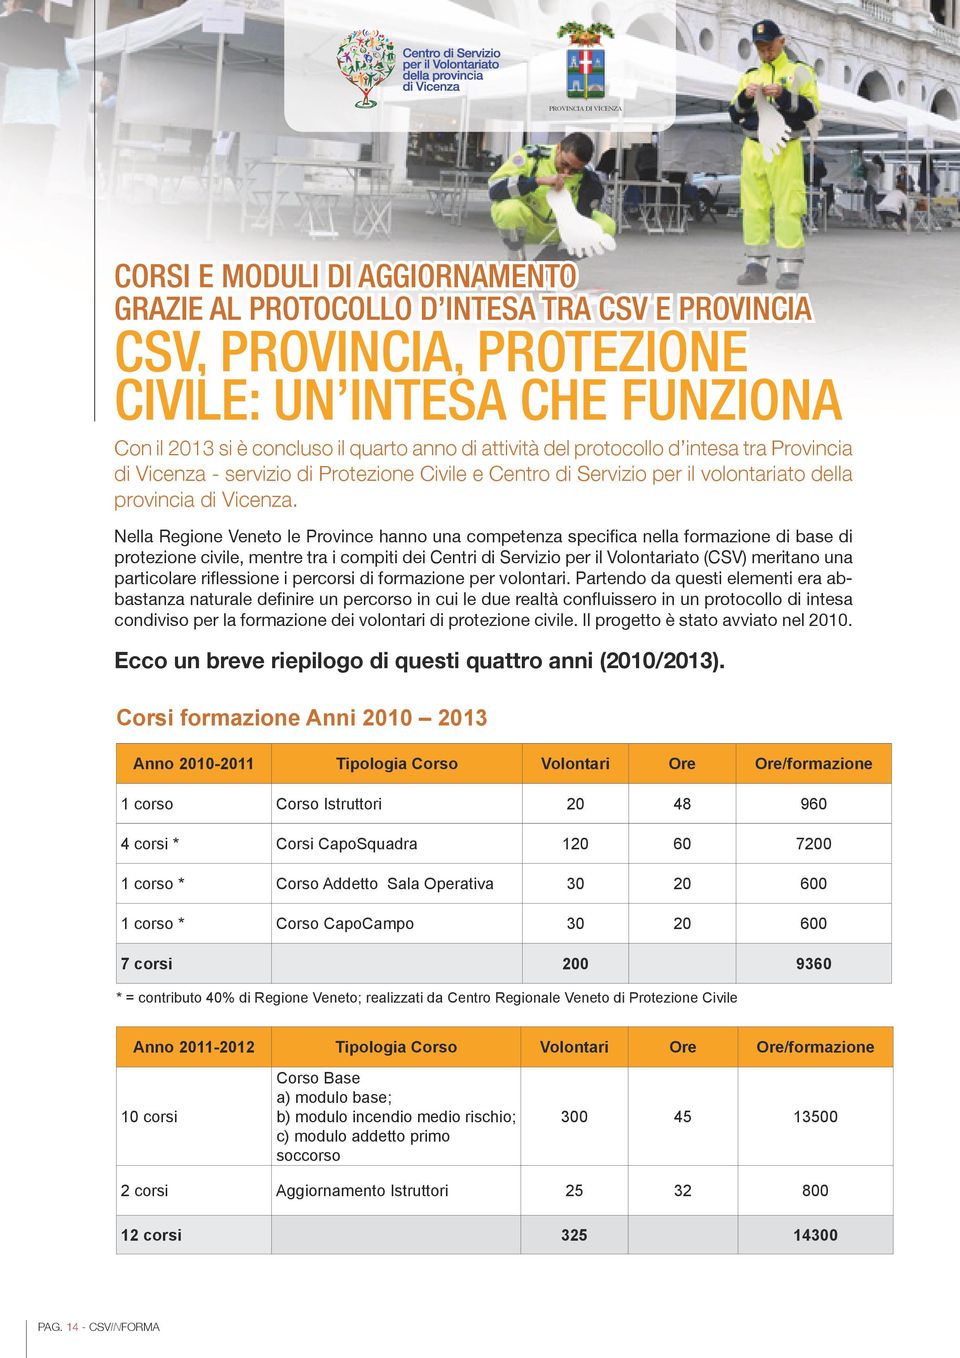 Nella Regione Veneto le Province hanno una competenza specifica nella formazione di base di protezione civile, mentre tra i compiti dei Centri di Servizio per il Volontariato (CSV) meritano una